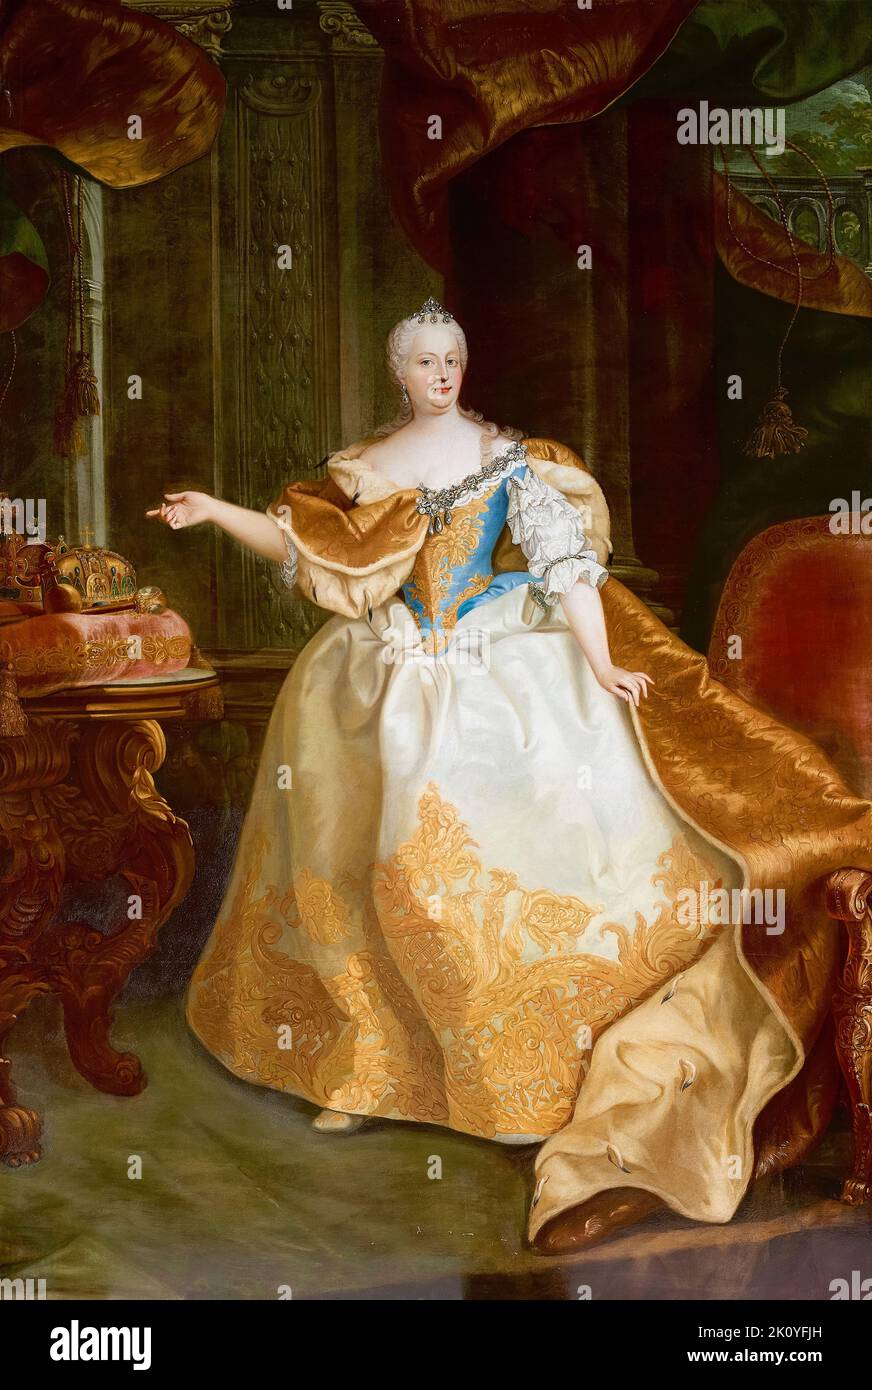 Maria Teresa (1717-1780), Arciduchessa d'Austria, Regina d'Ungheria e Boemia, Imperatrice Sacra Romana, dipinto a olio su tela di Martin van Meytens, 1750-1765 Foto Stock